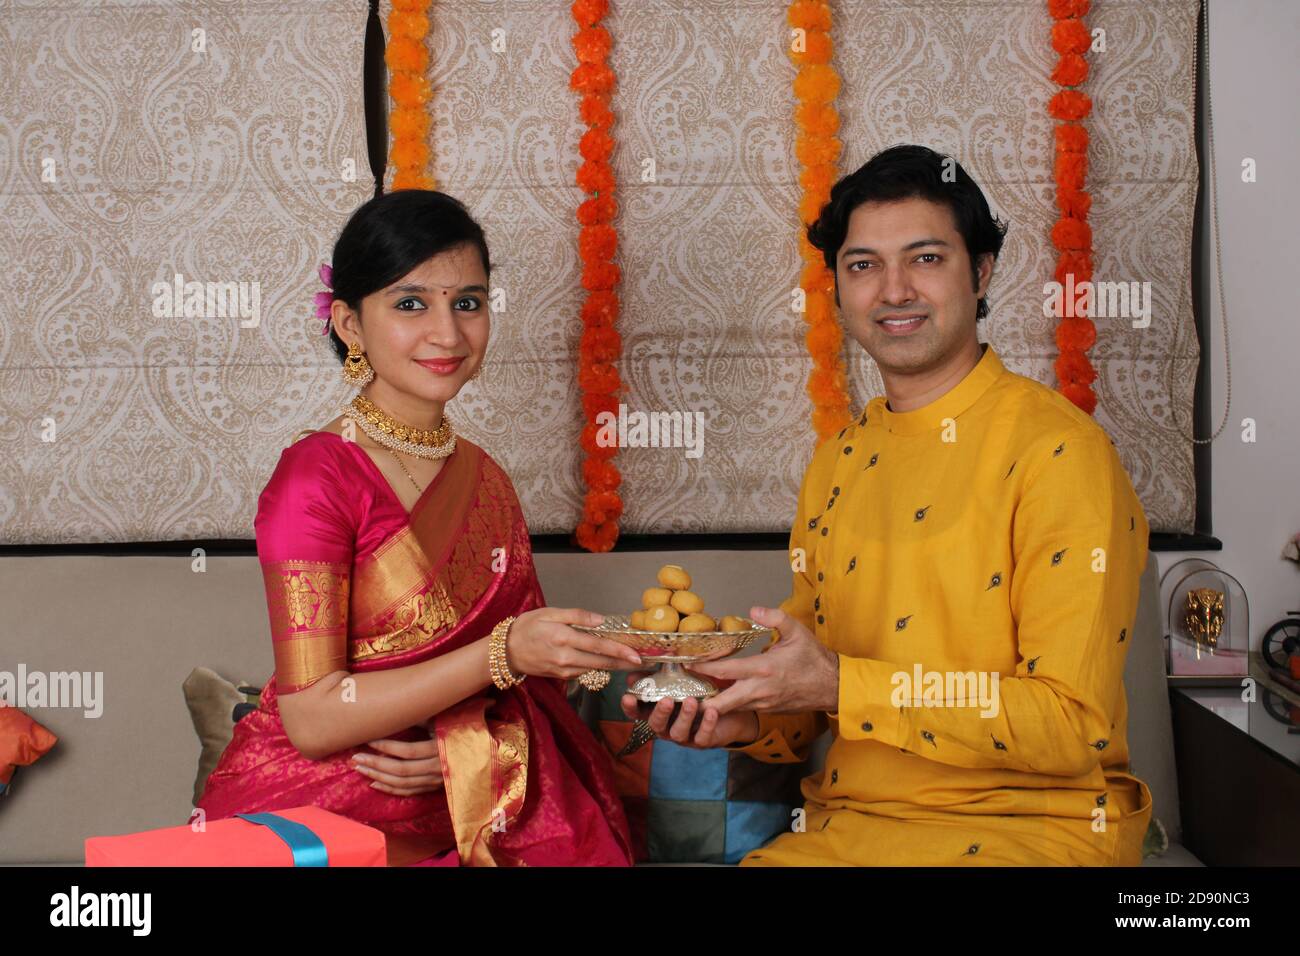 Indisches Paar mit Süßigkeiten und Geschenken während der Feier Diwali, Deepavali oder Dipavali Festival. Stockfoto